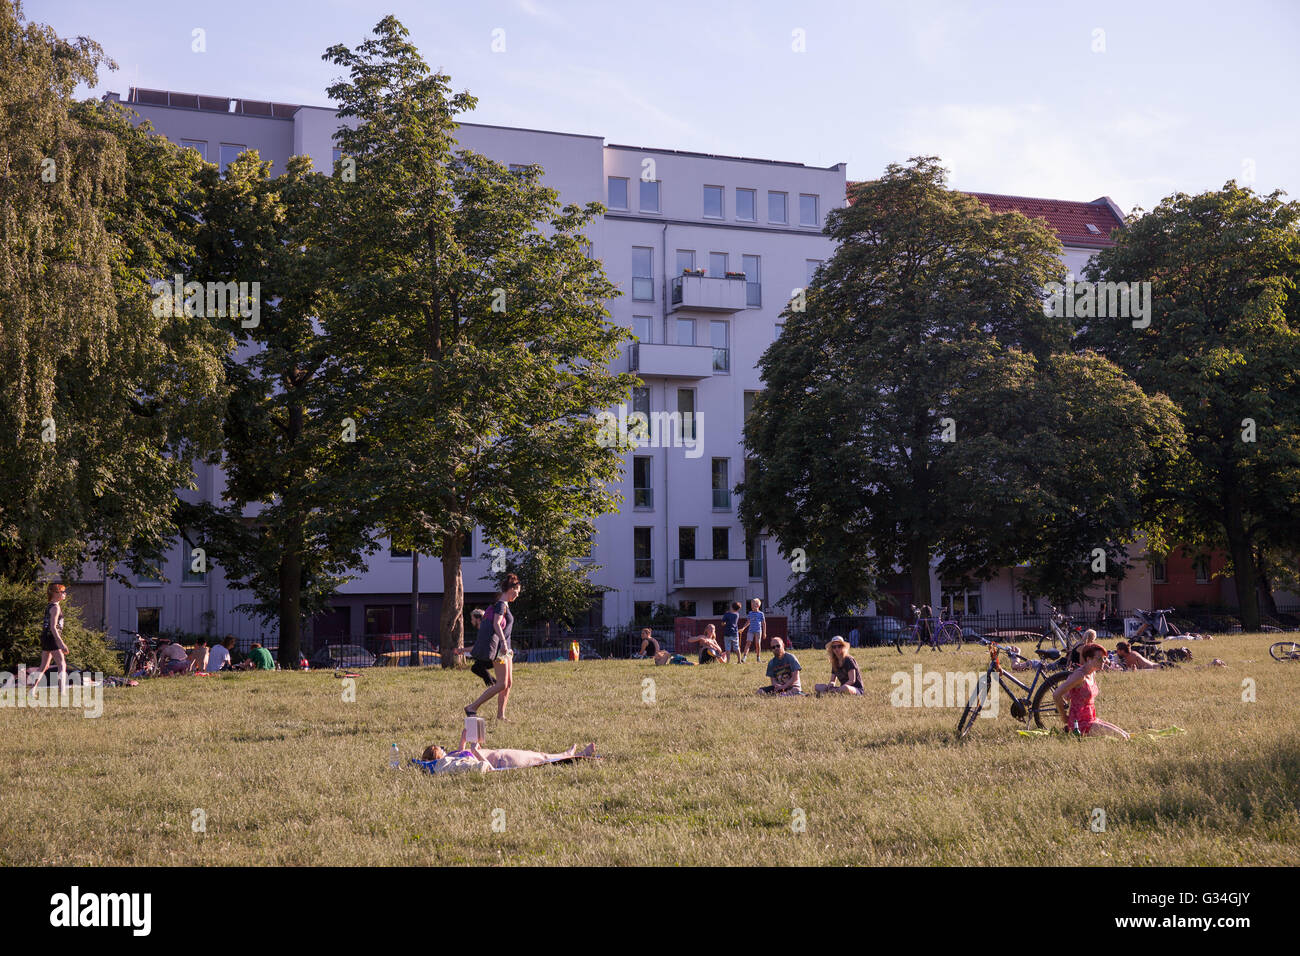 Un giorno di estate a Berlino. Persone godersi il bel tempo in un parco, Foto Stock